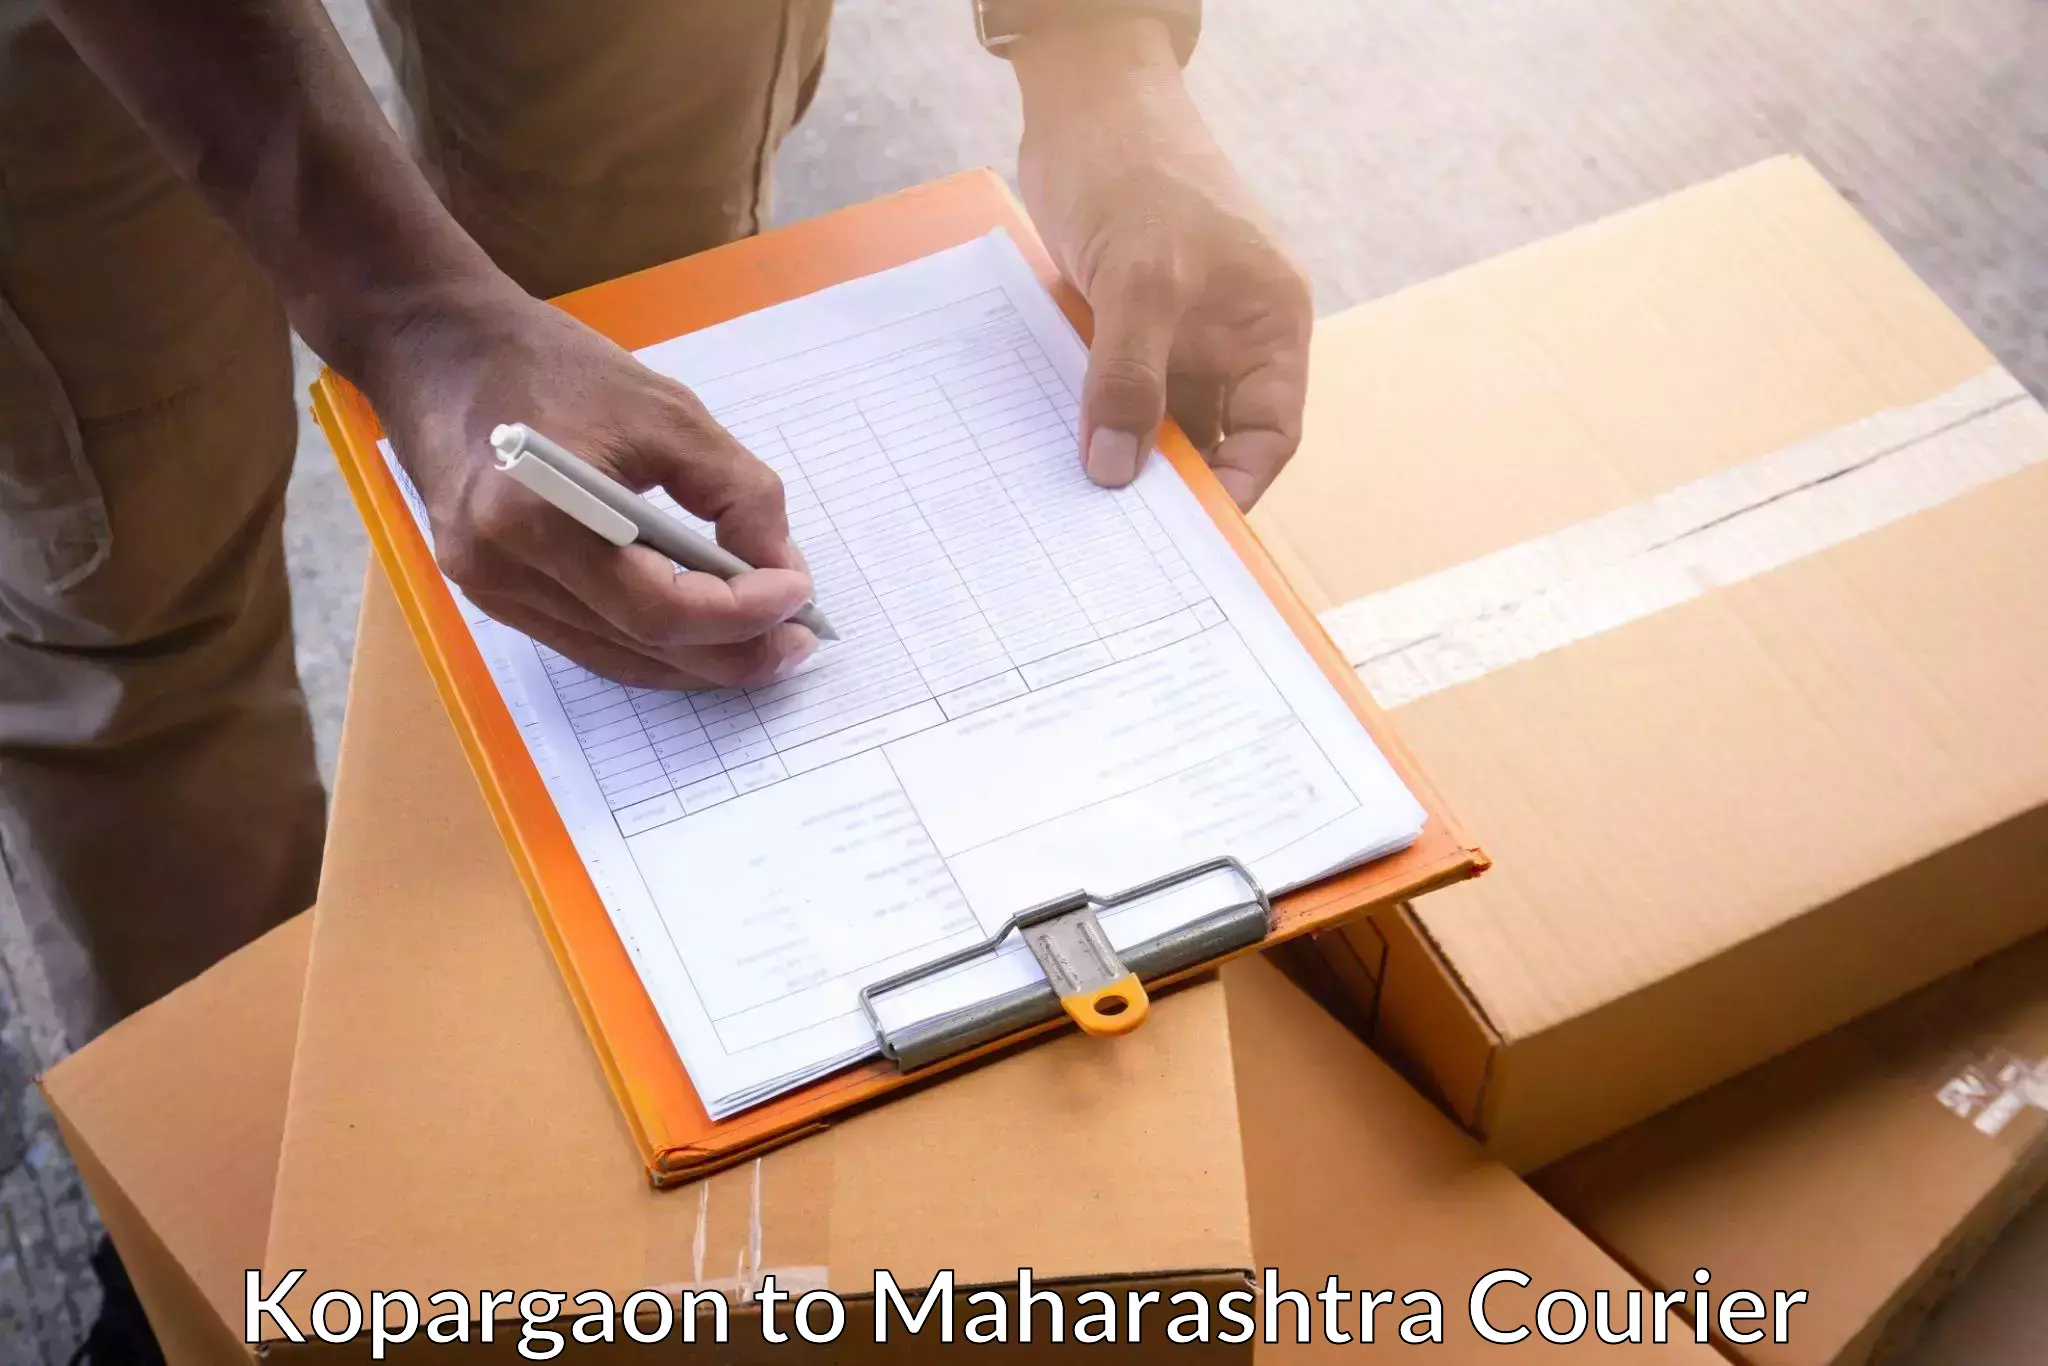 Professional parcel services Kopargaon to Kopargaon